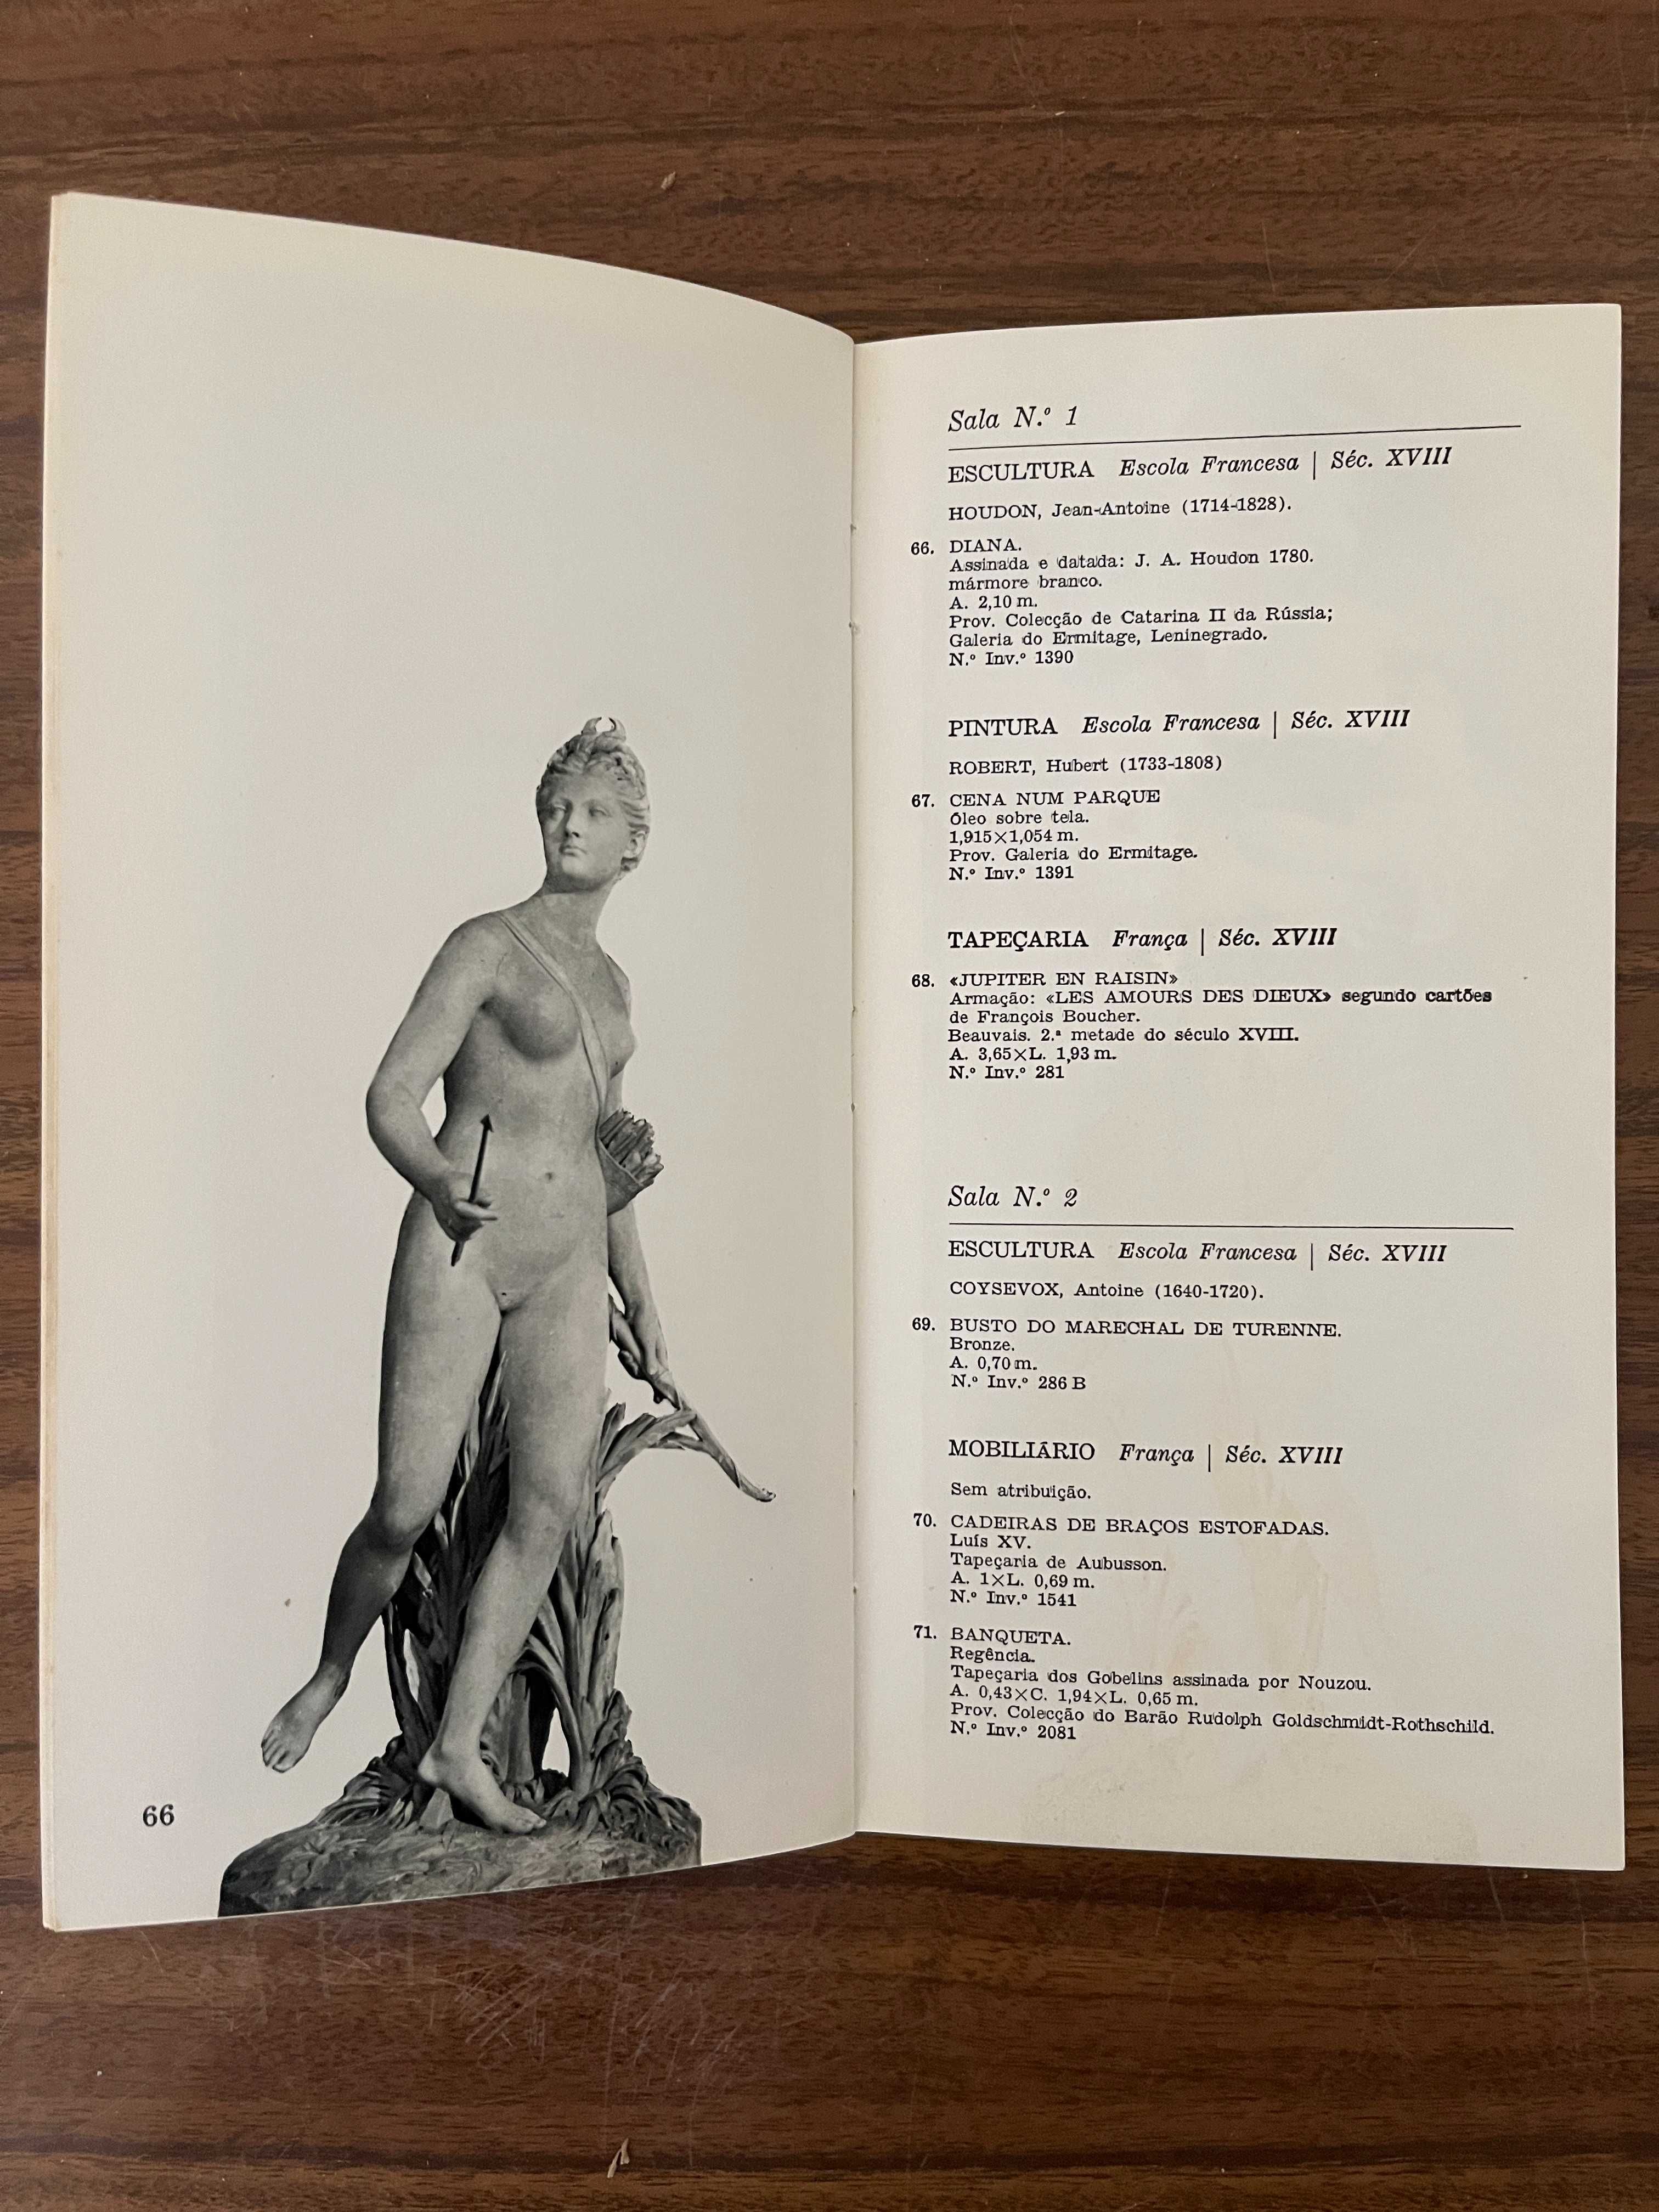 Obras de arte da Colecção Calouste Gulbenkian - 1965